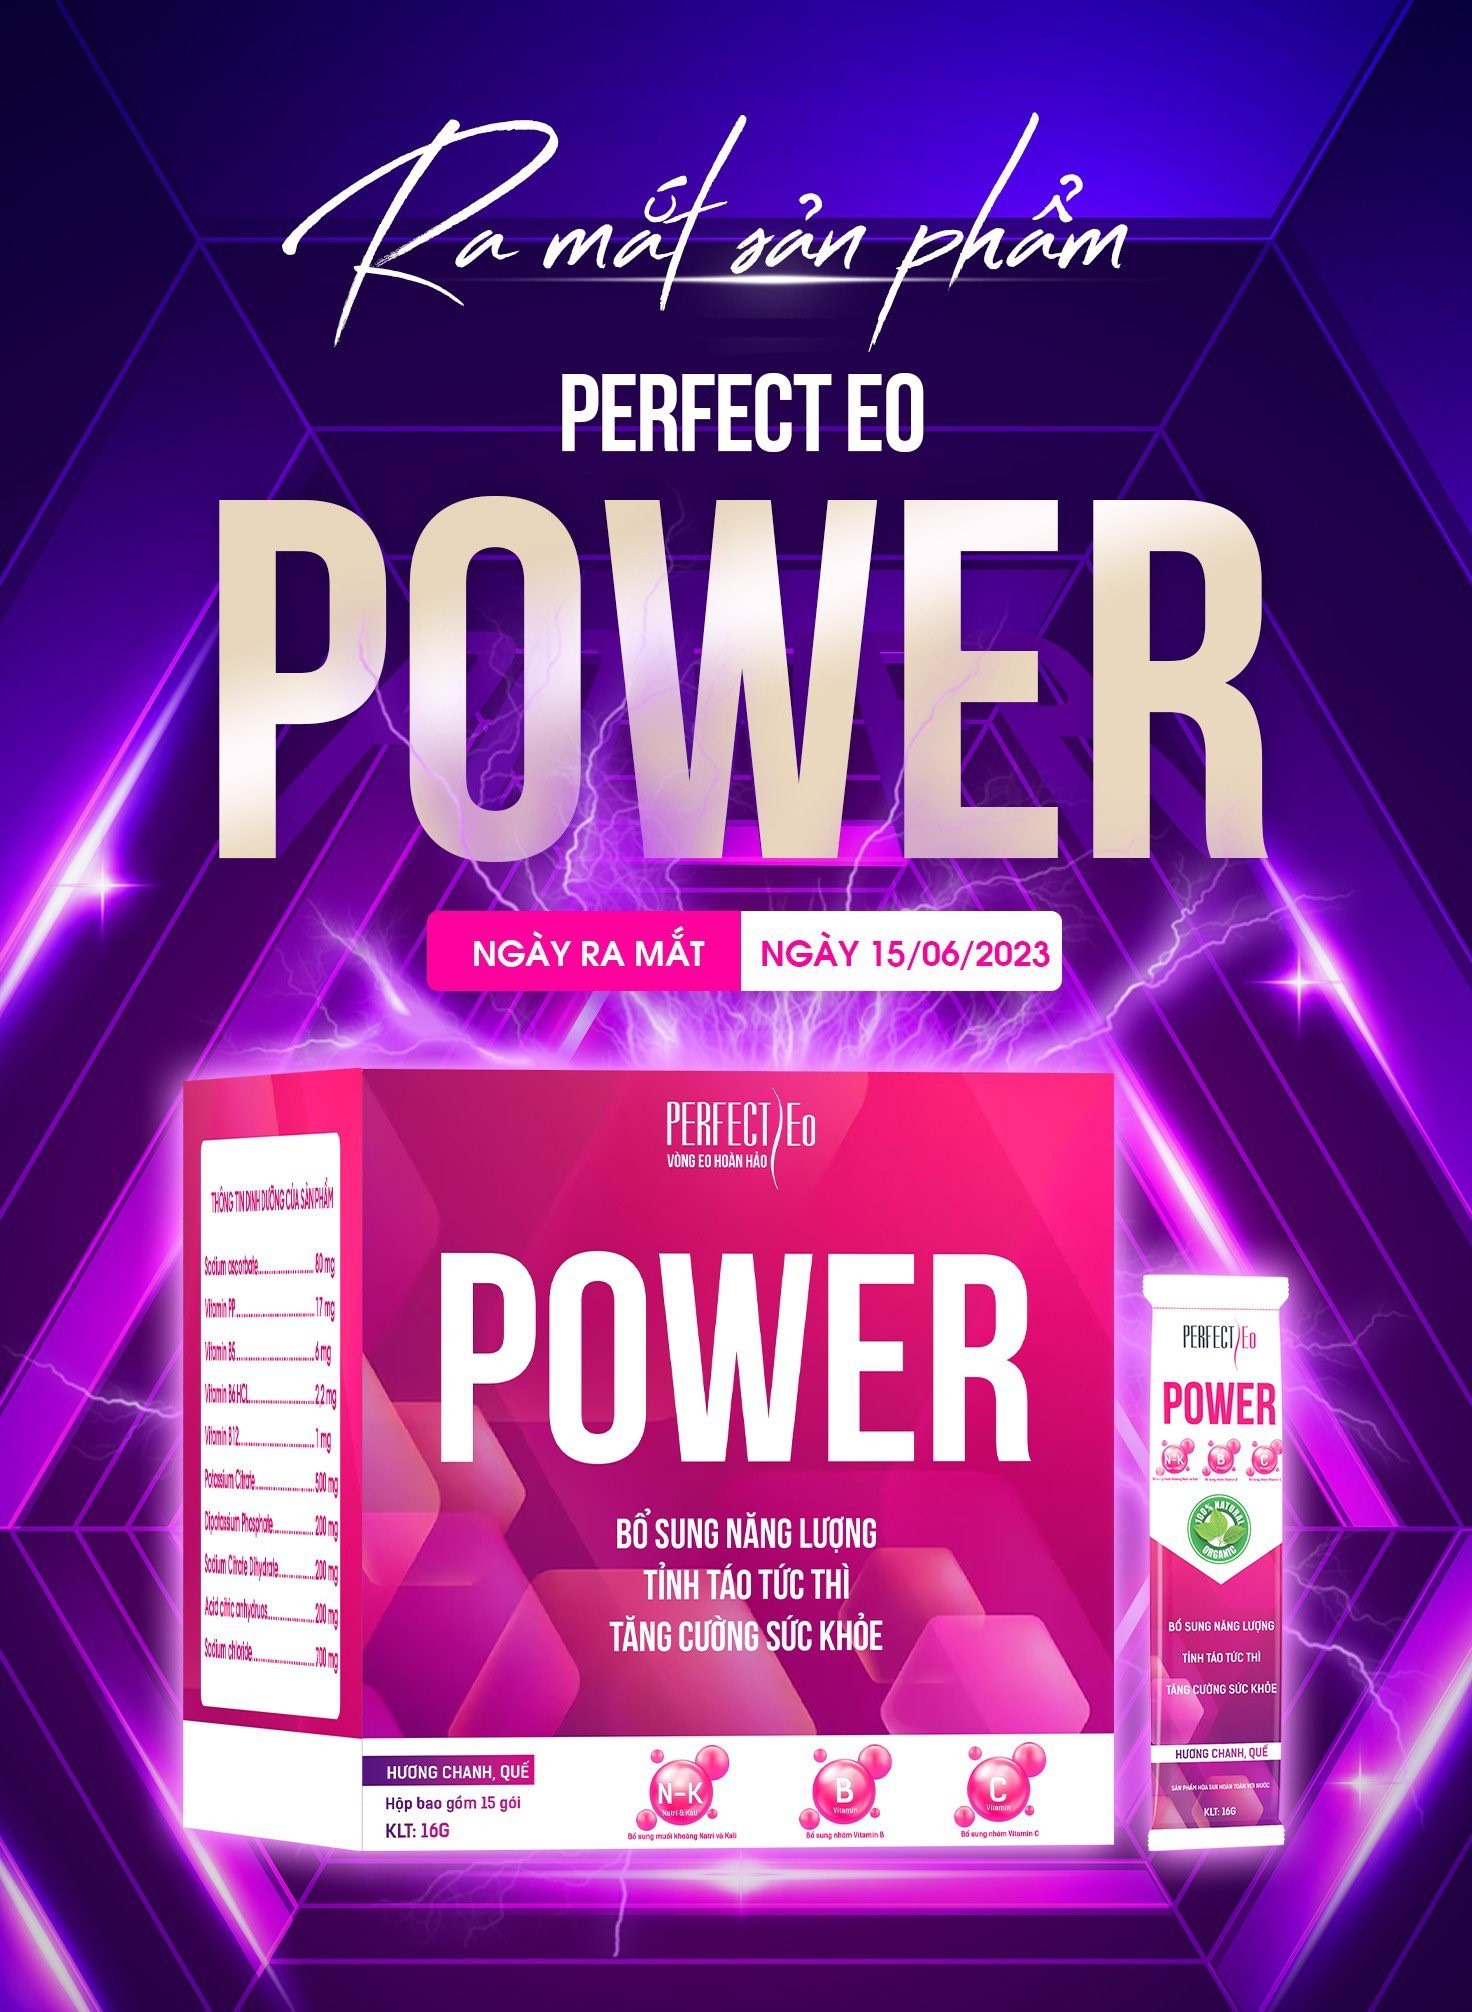 Cùng chào đón sự rực rỡ của Perfect Eo Power – Siêu phẩm đã đổ bộ về kho Perfect Eo!